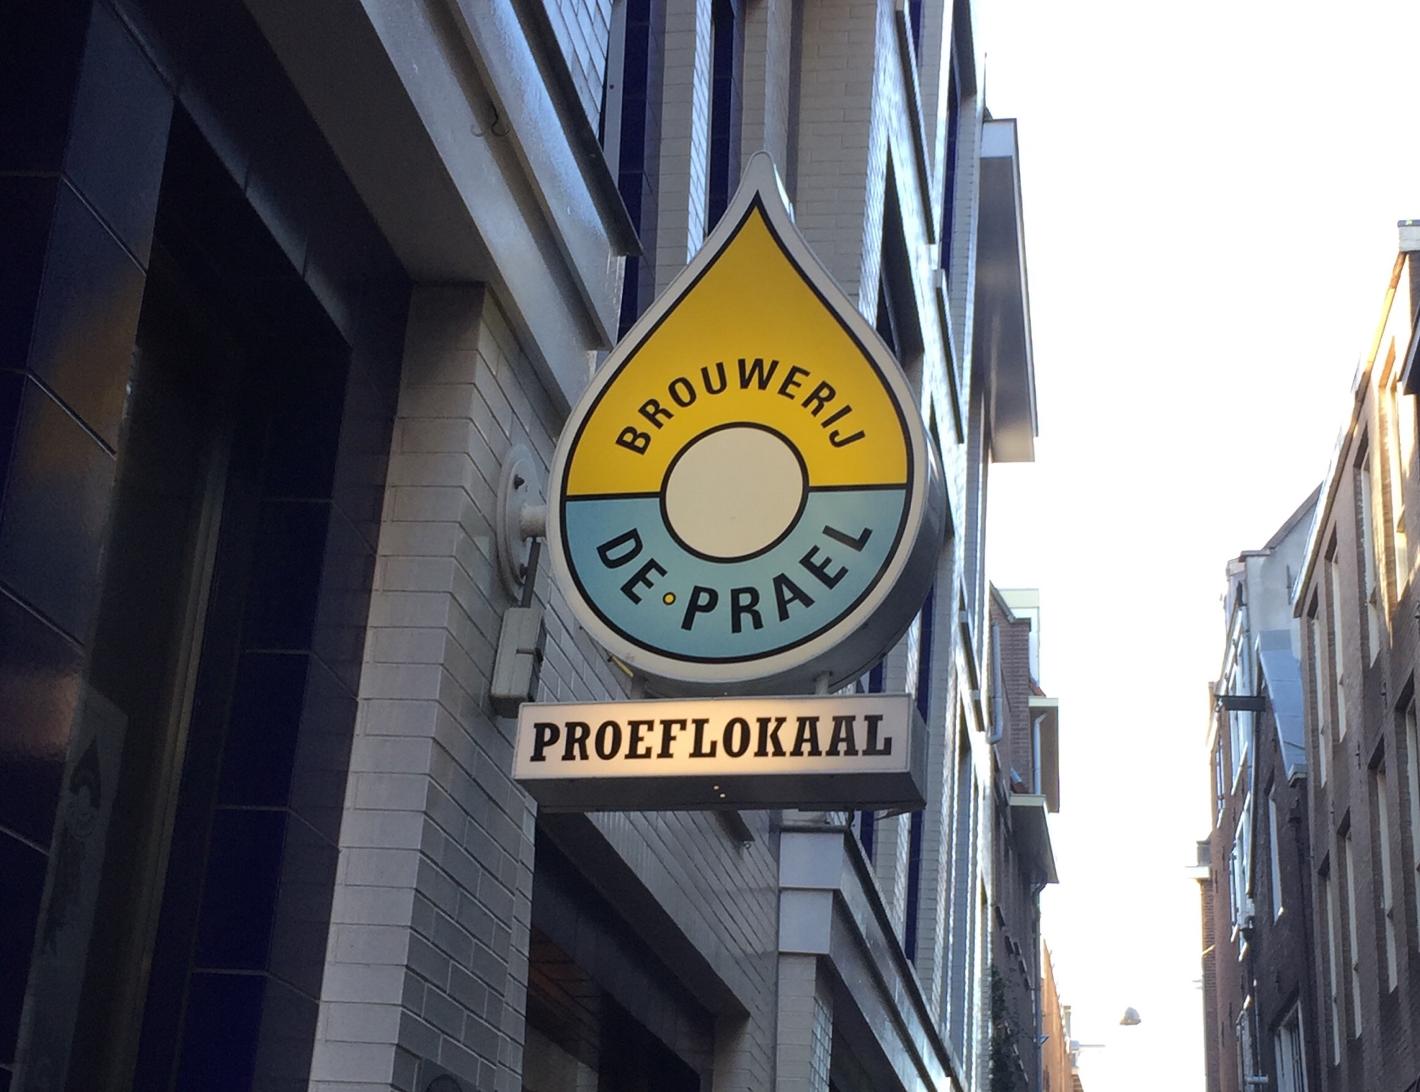 Foto Brouwerij de Prael in Amsterdam, Einkaufen, Geschenk, Delikatesse, Getränk, Aktivität - #1